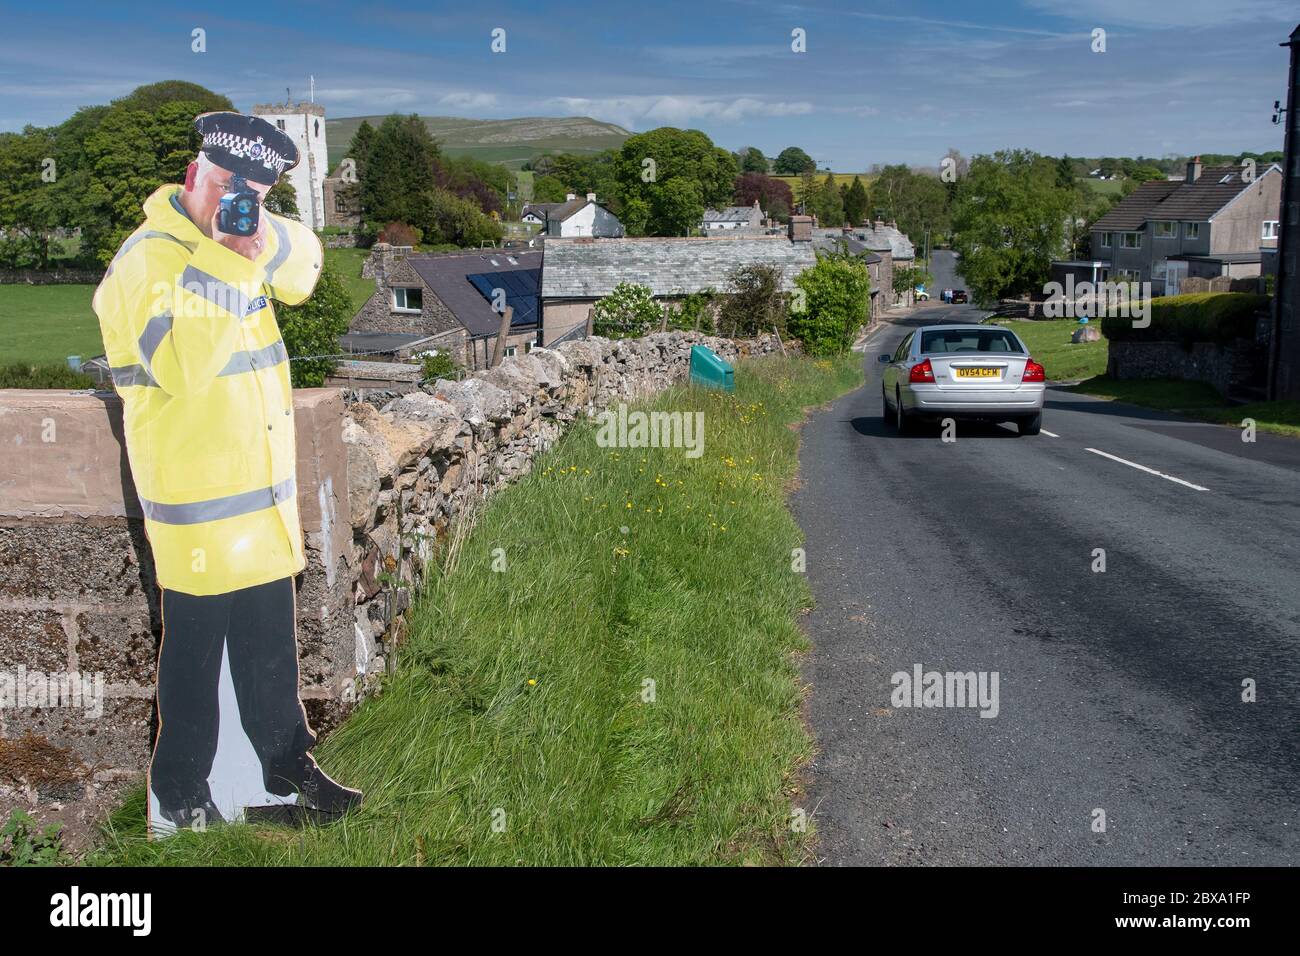 Taglio di cartone di un poliziotto che tiene una pistola ad alta velocità per aiutare il traffico lento sull'avvicinamento ad un villaggio. Cumbria, Regno Unito. Foto Stock